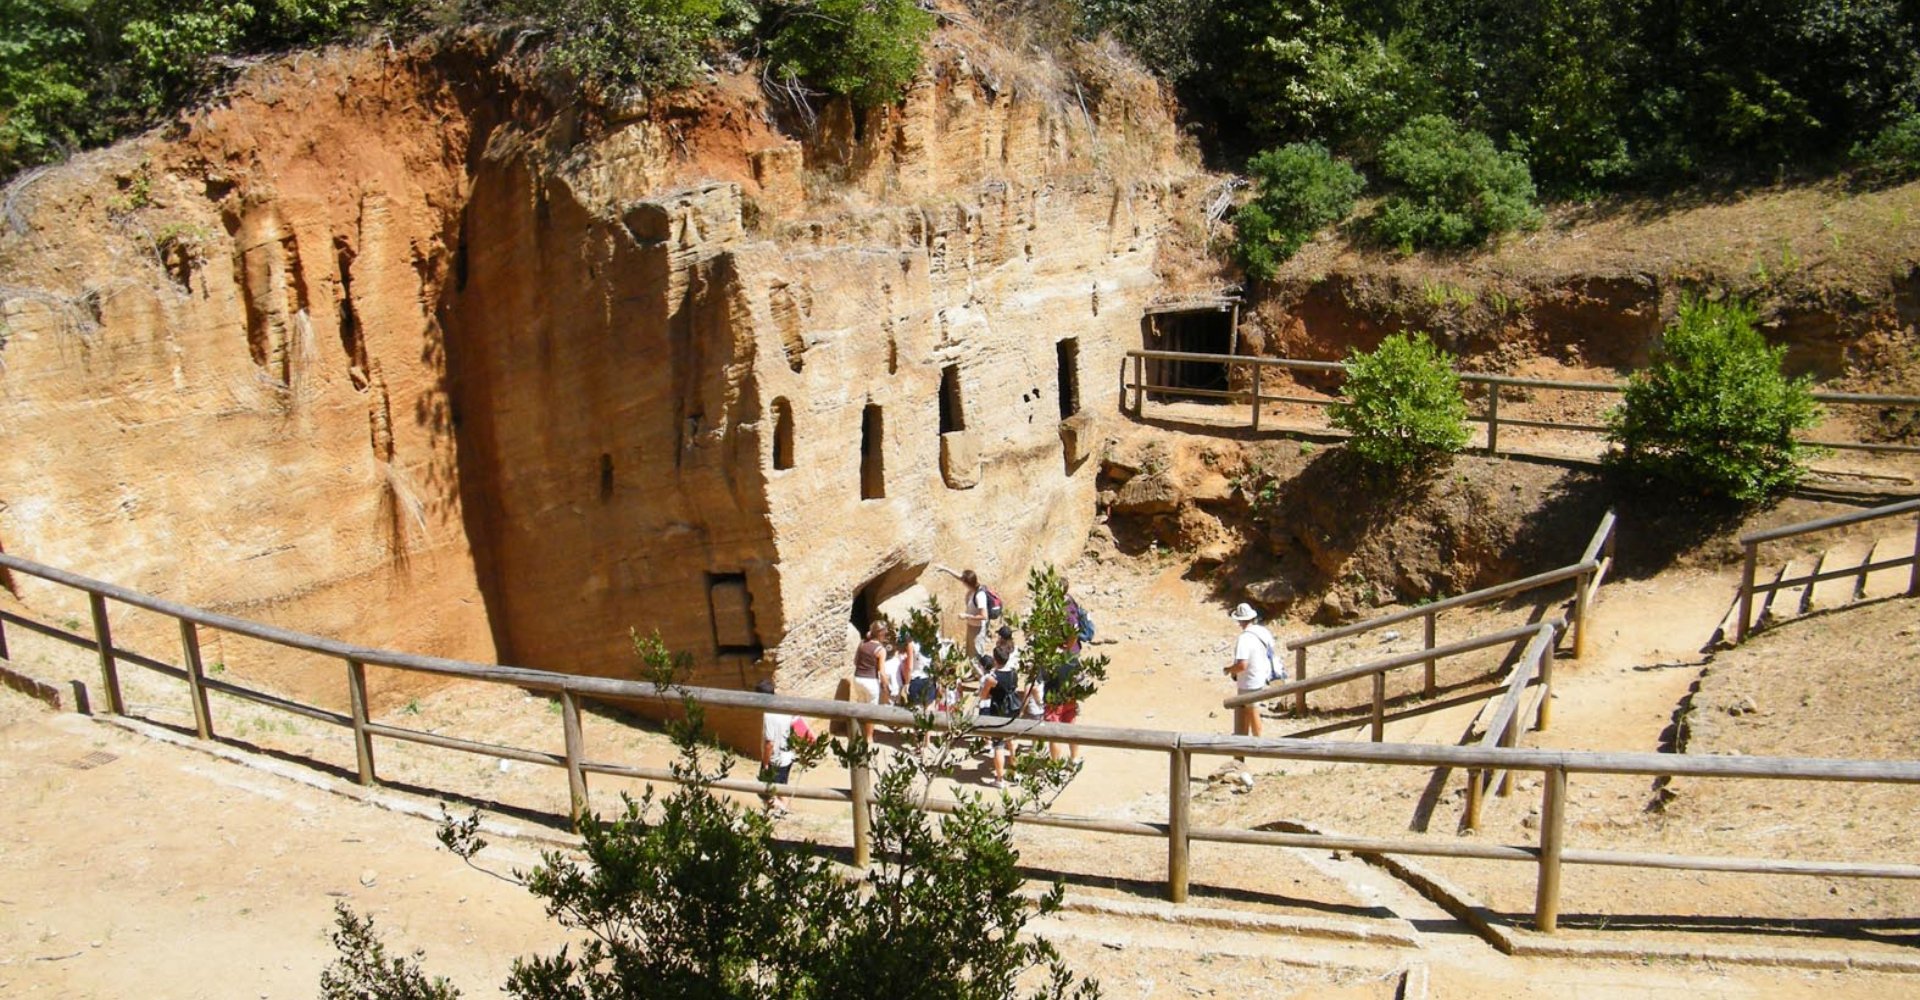 Parco archeologico Baratti e Populonia necropoli grotte